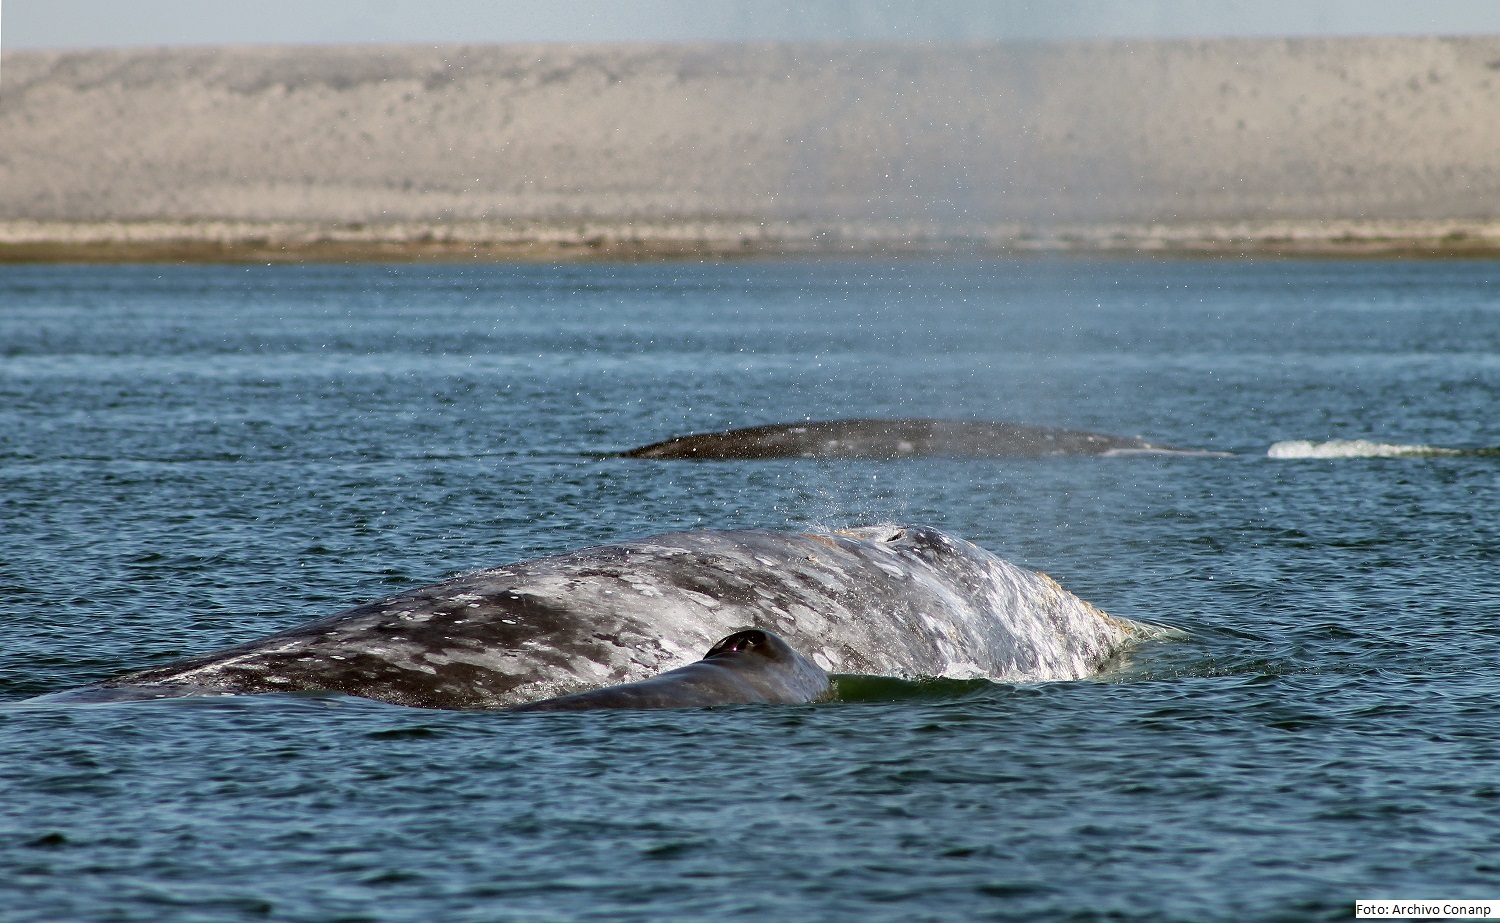 Se espera mejore la afluencia de turistas para la observación de ballenas

